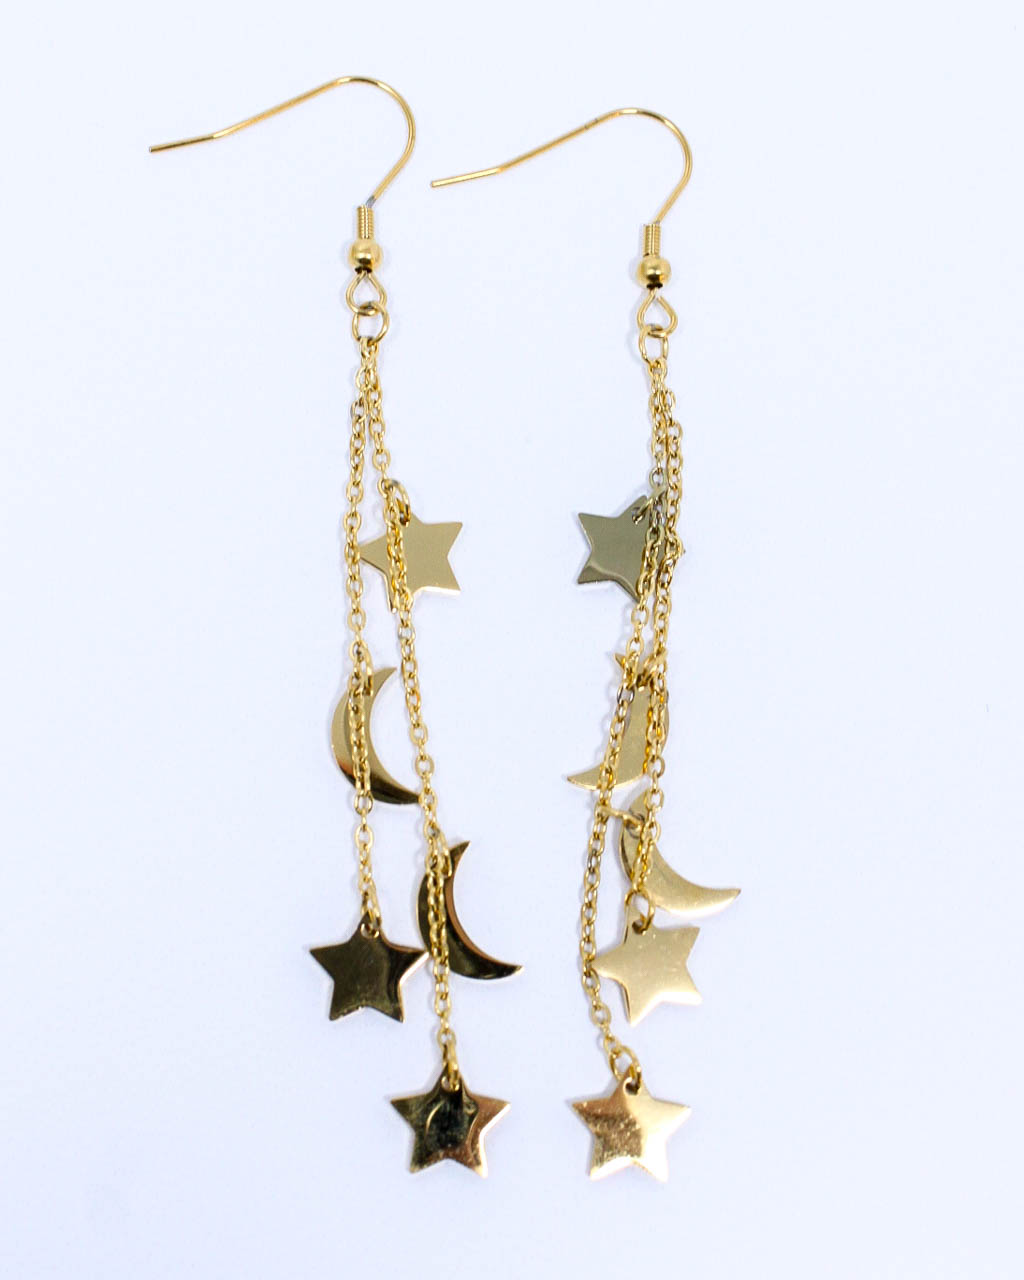 Prancing Moon & Star Earrings